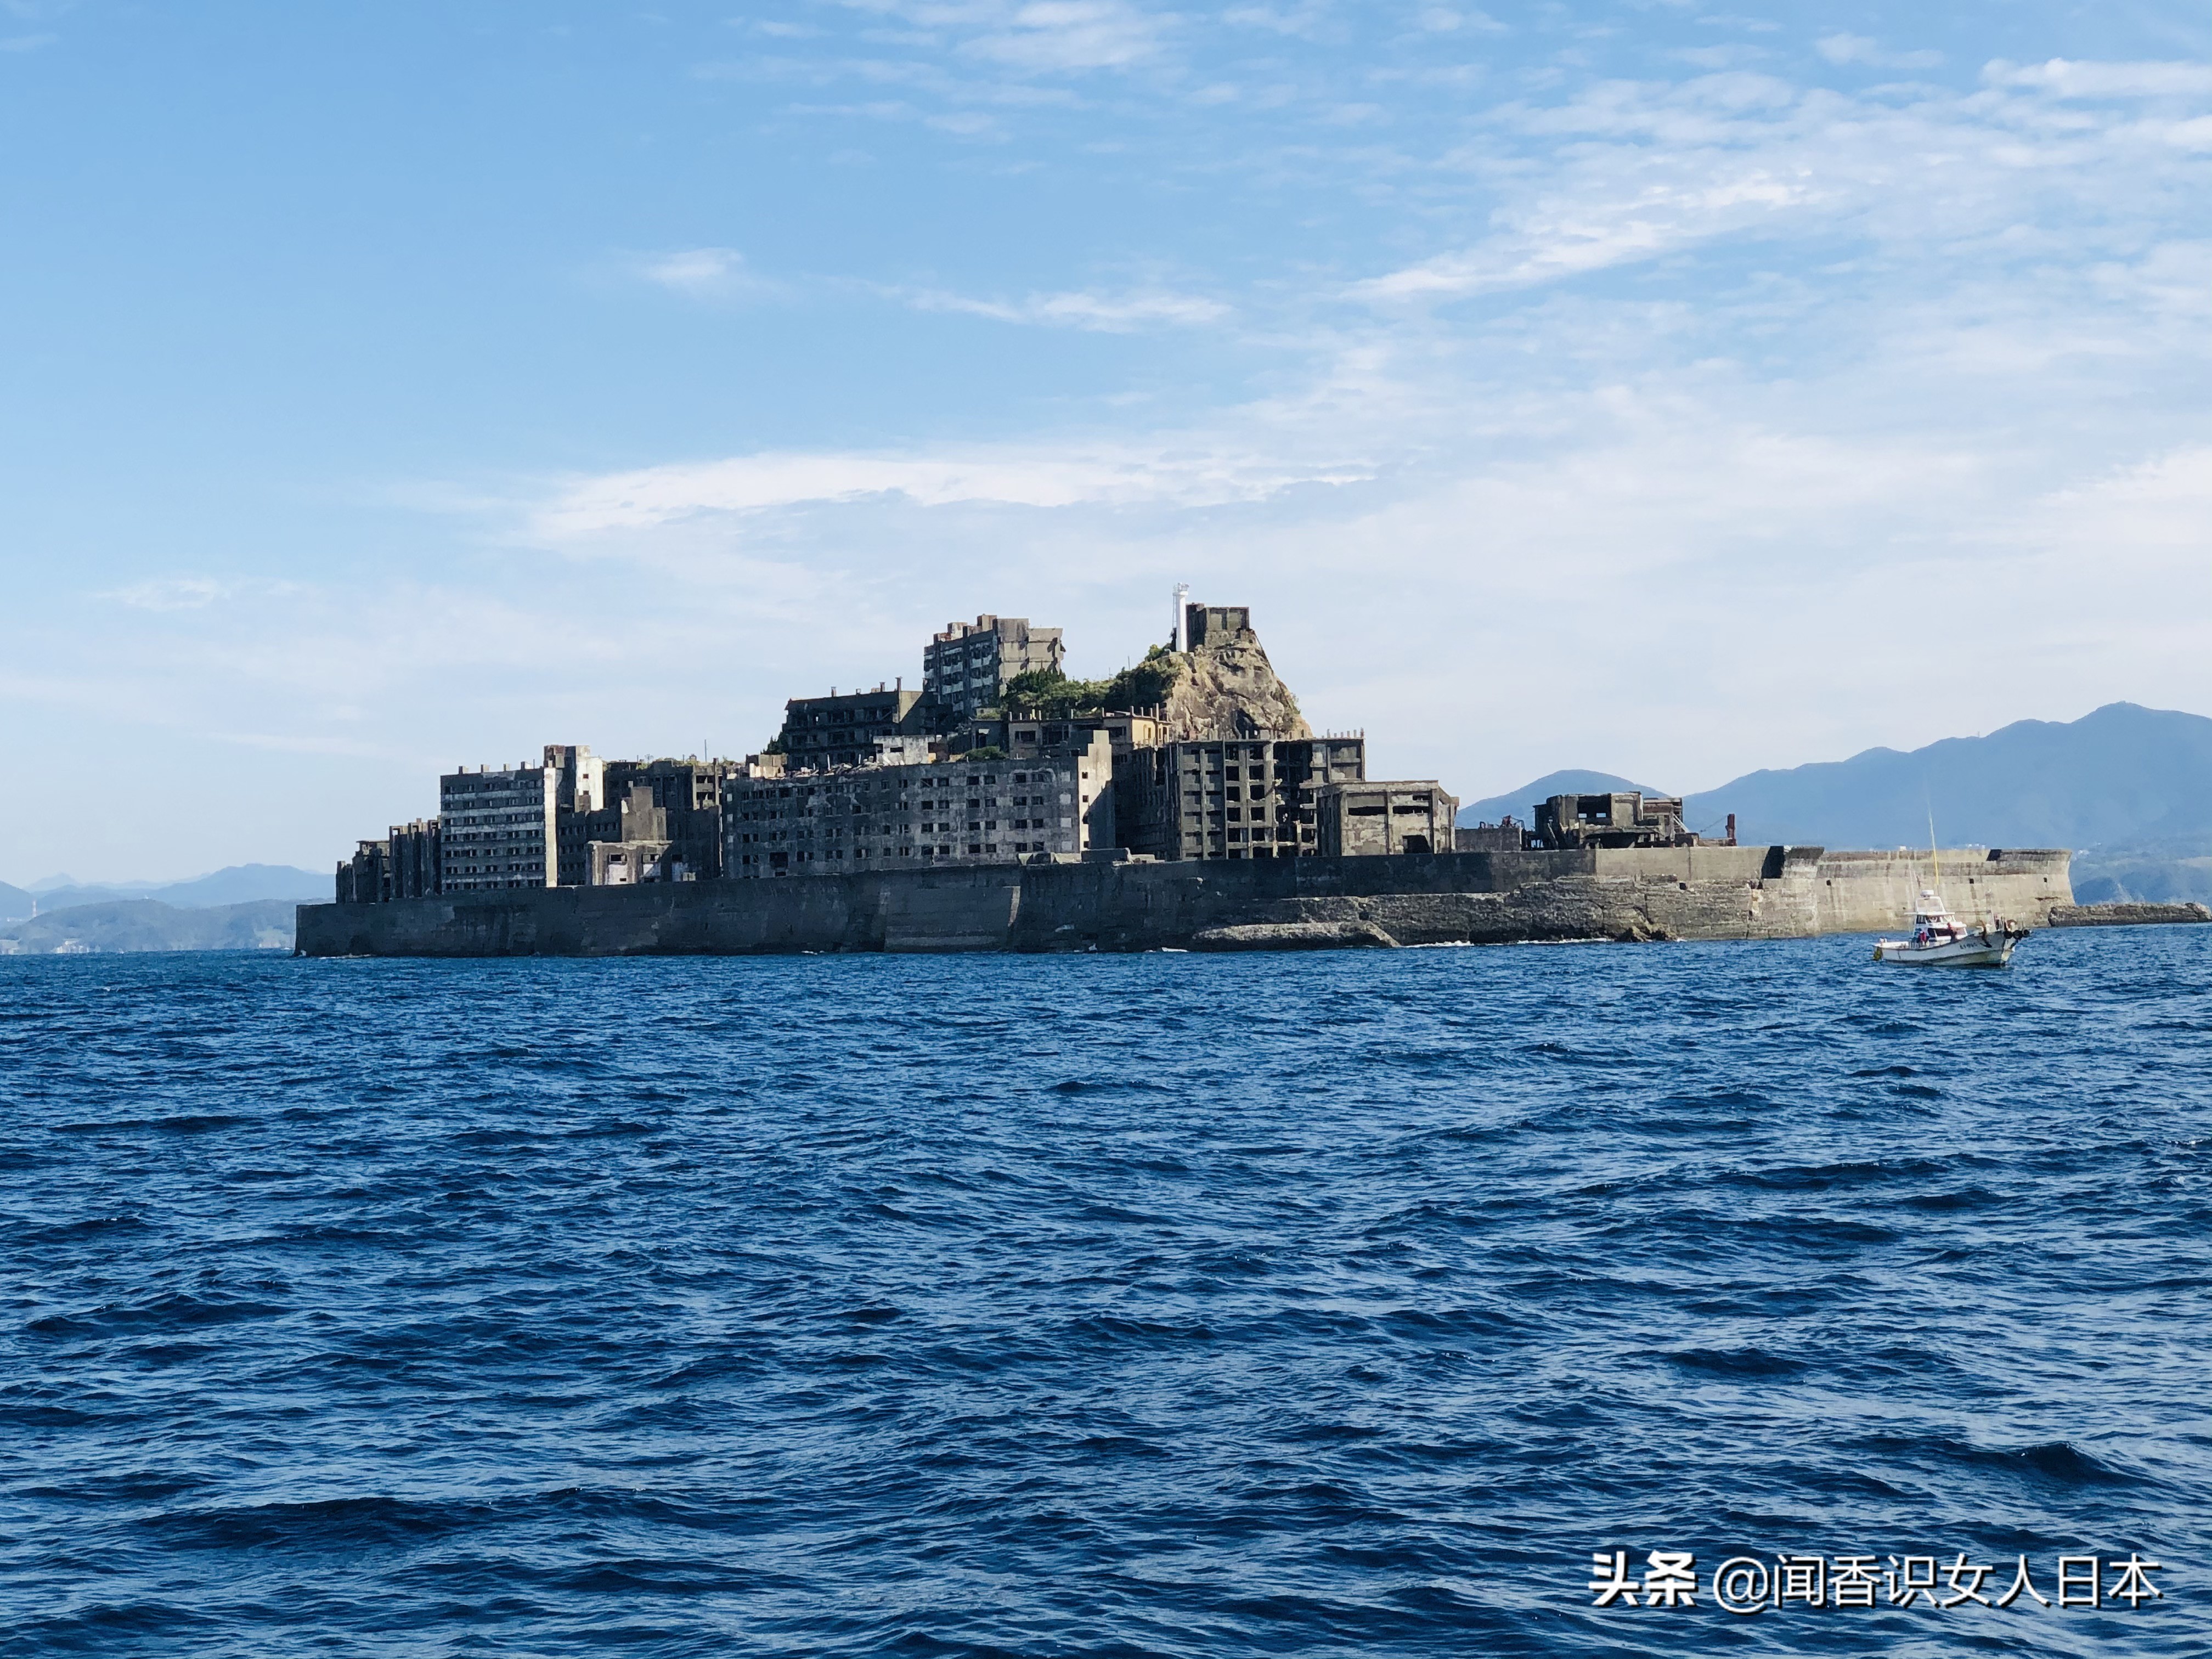 日本军舰岛,一座废弃的无人岛,现在是热门观光地,岛上废墟遍地_手机